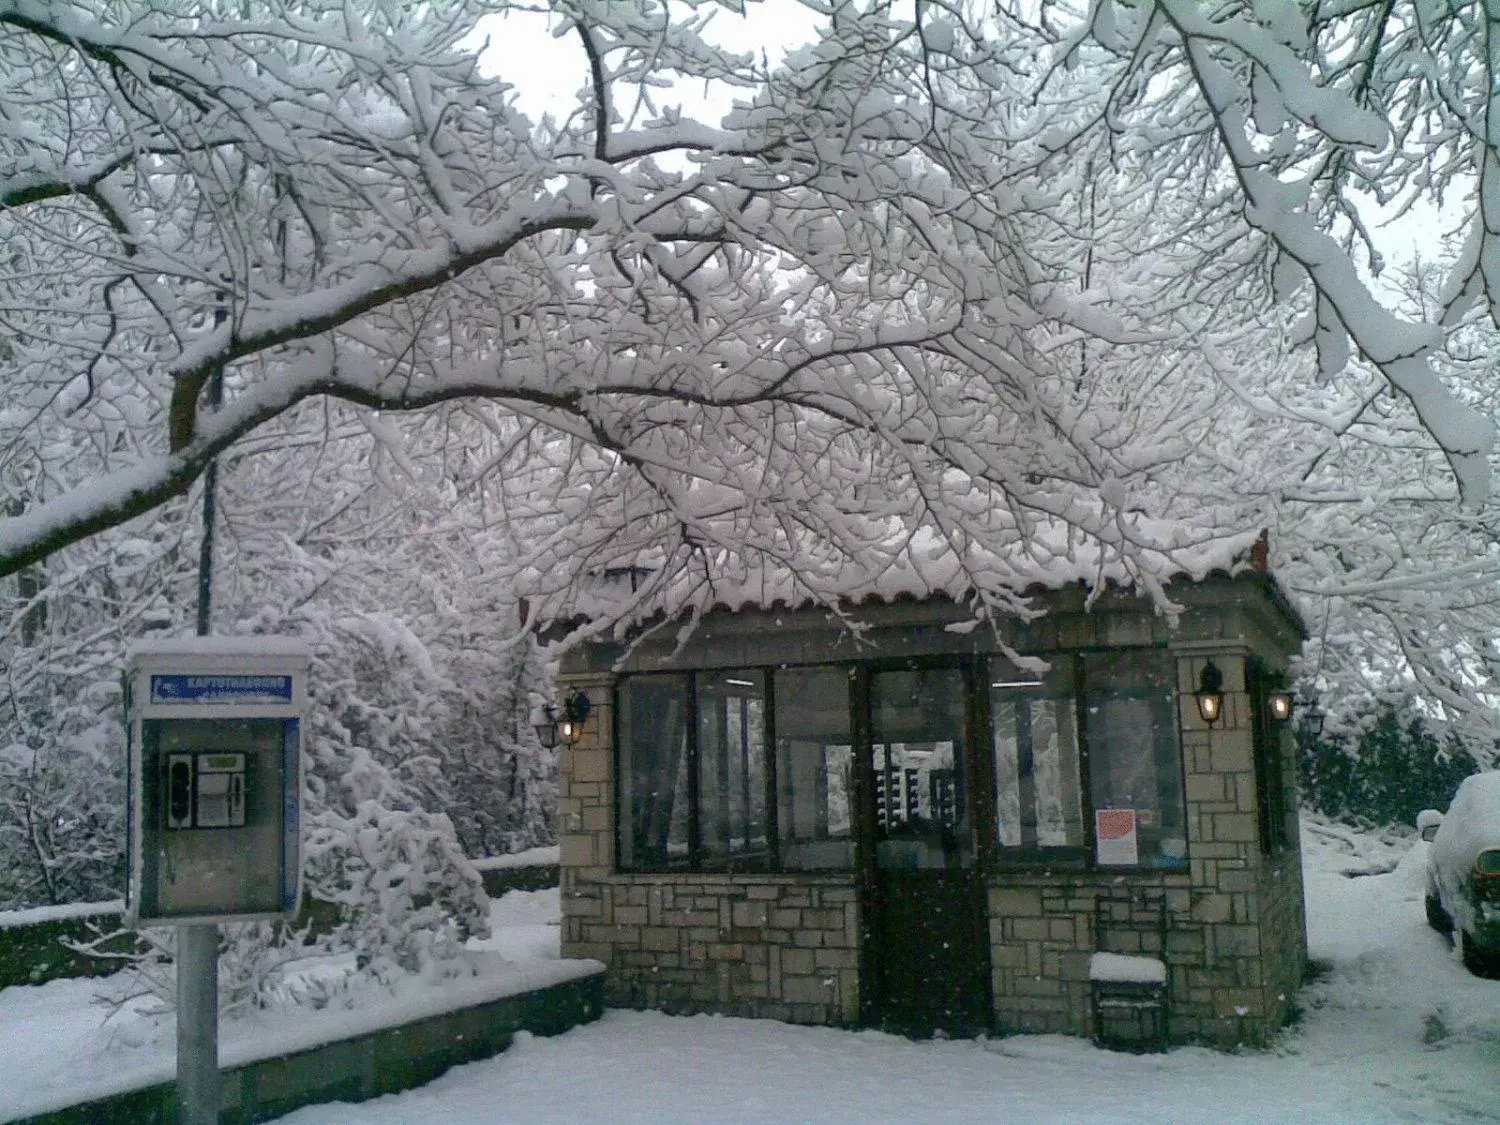 Property building, Winter in Hani Zemenou